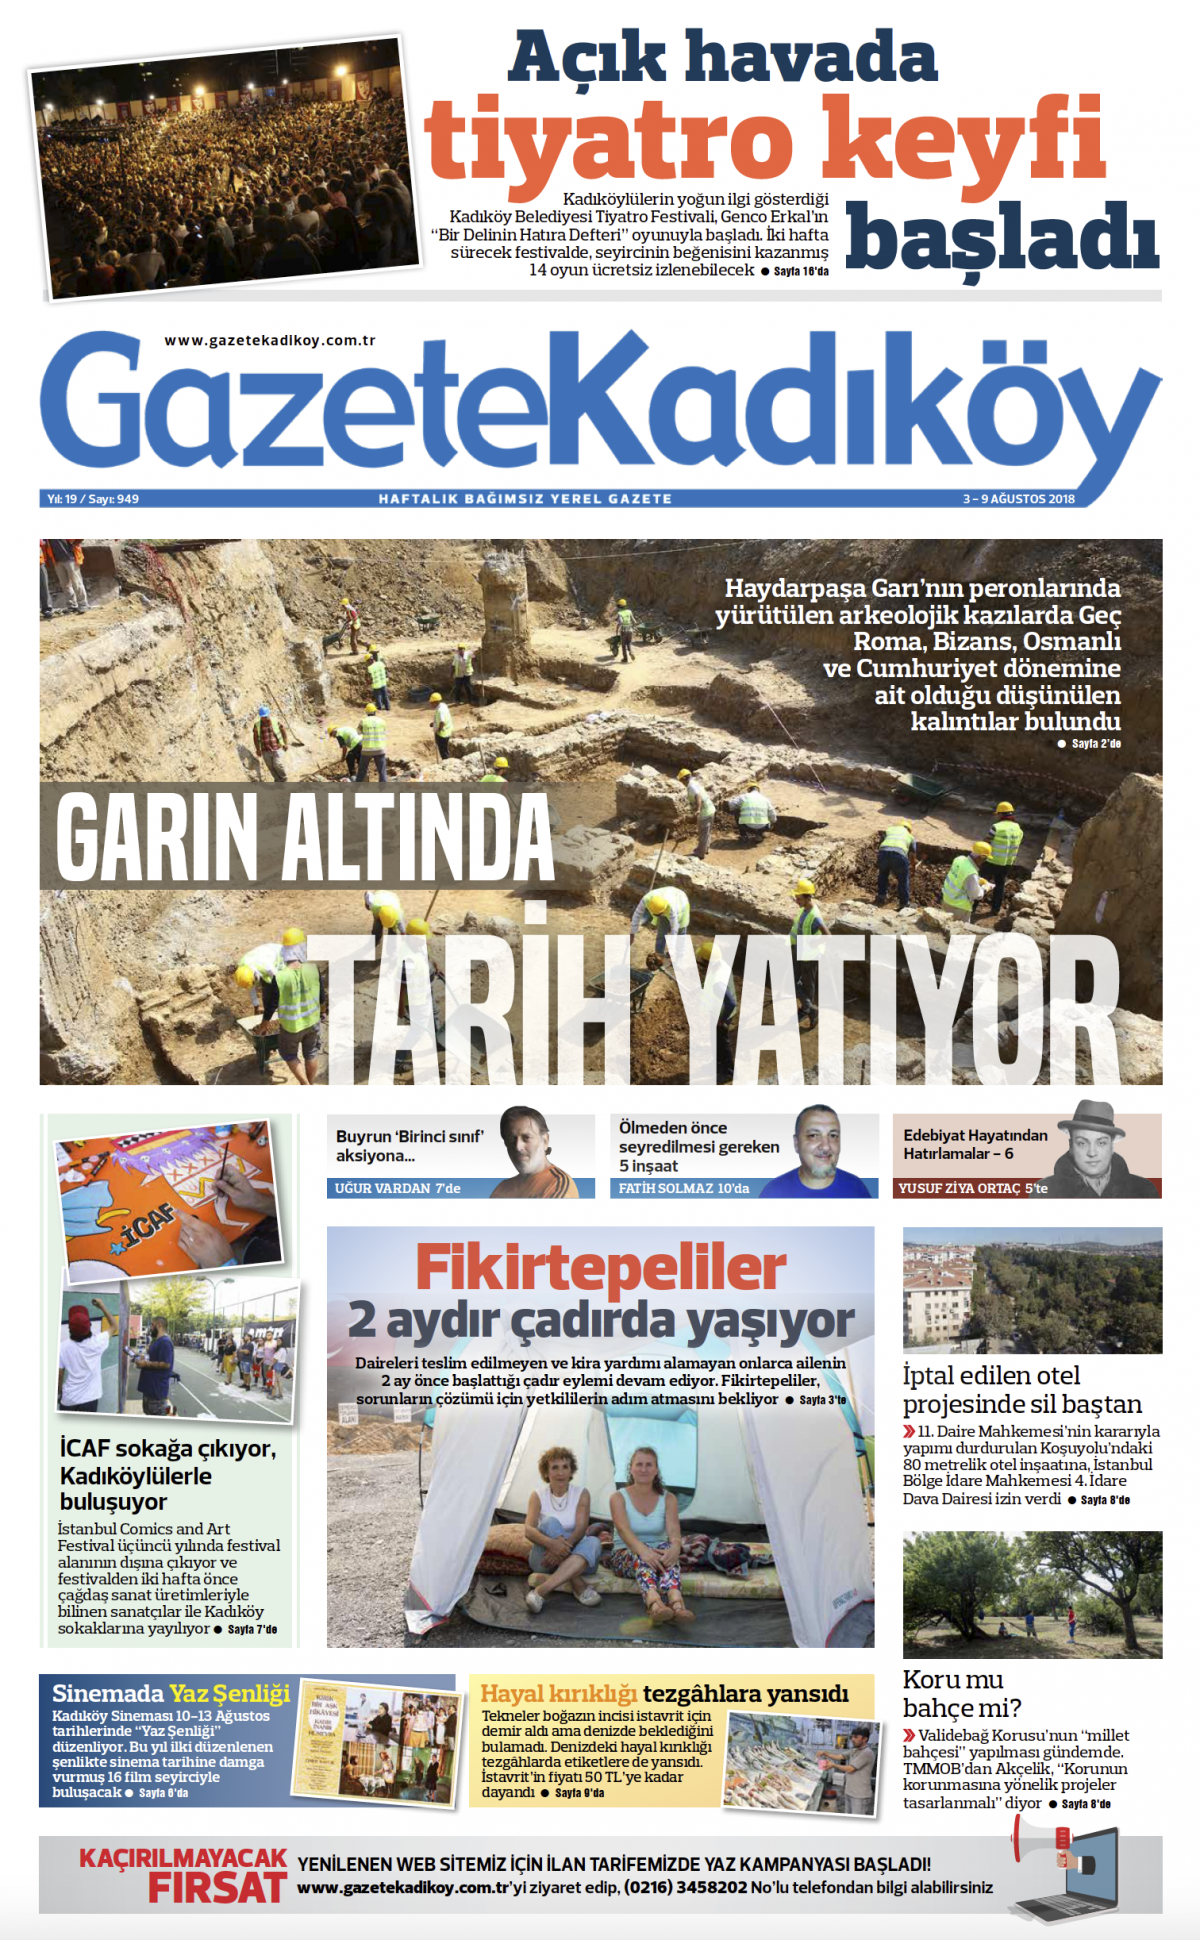 Gazete Kadıköy - 949. SAYI